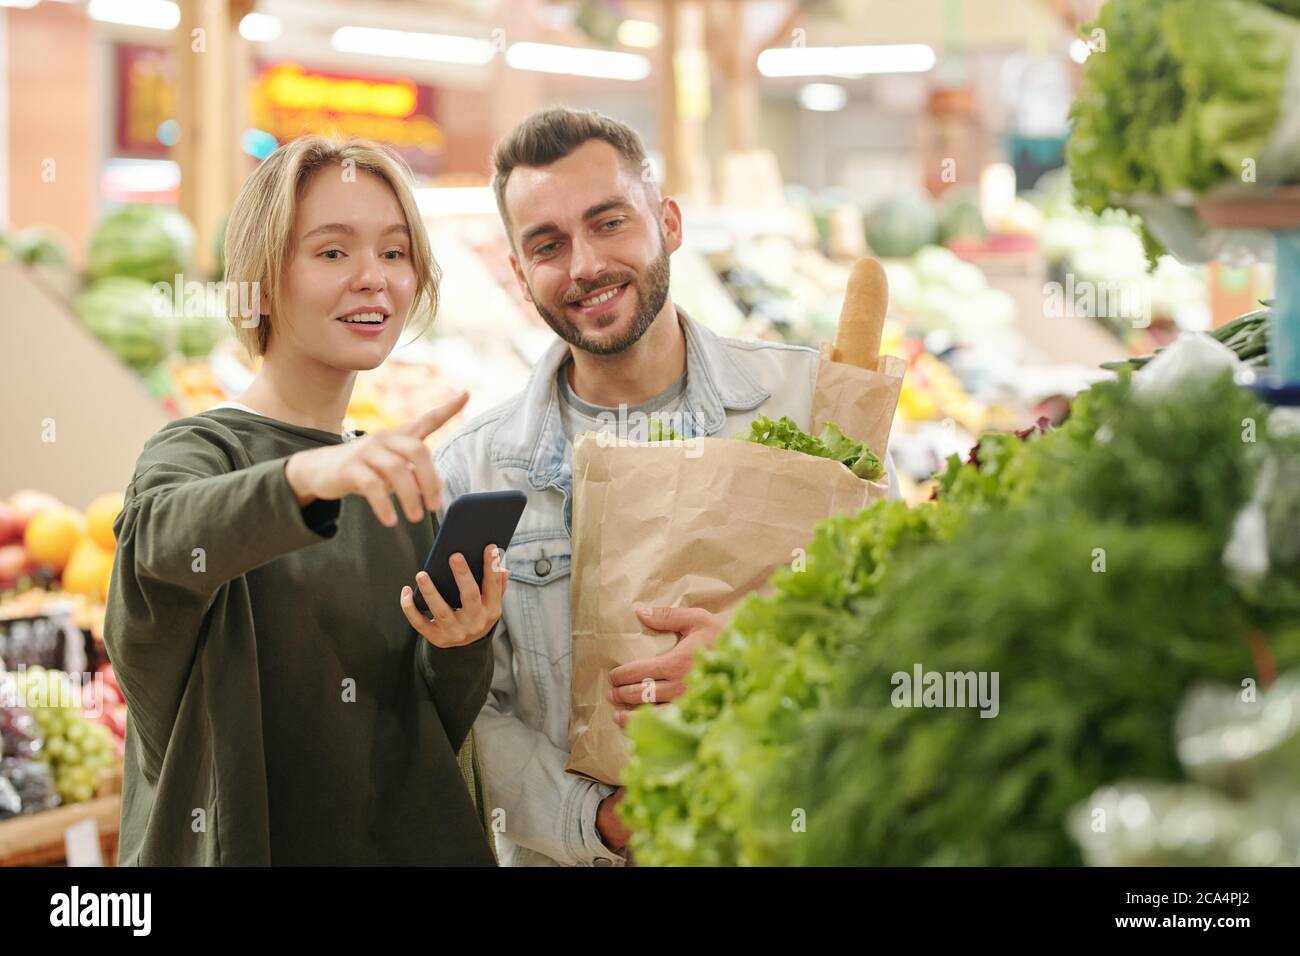 Una giovane donna positiva che utilizza l'app per smartphone per acquistare e indicare i green al ragazzo mentre acquista prodotti sul mercato Foto Stock